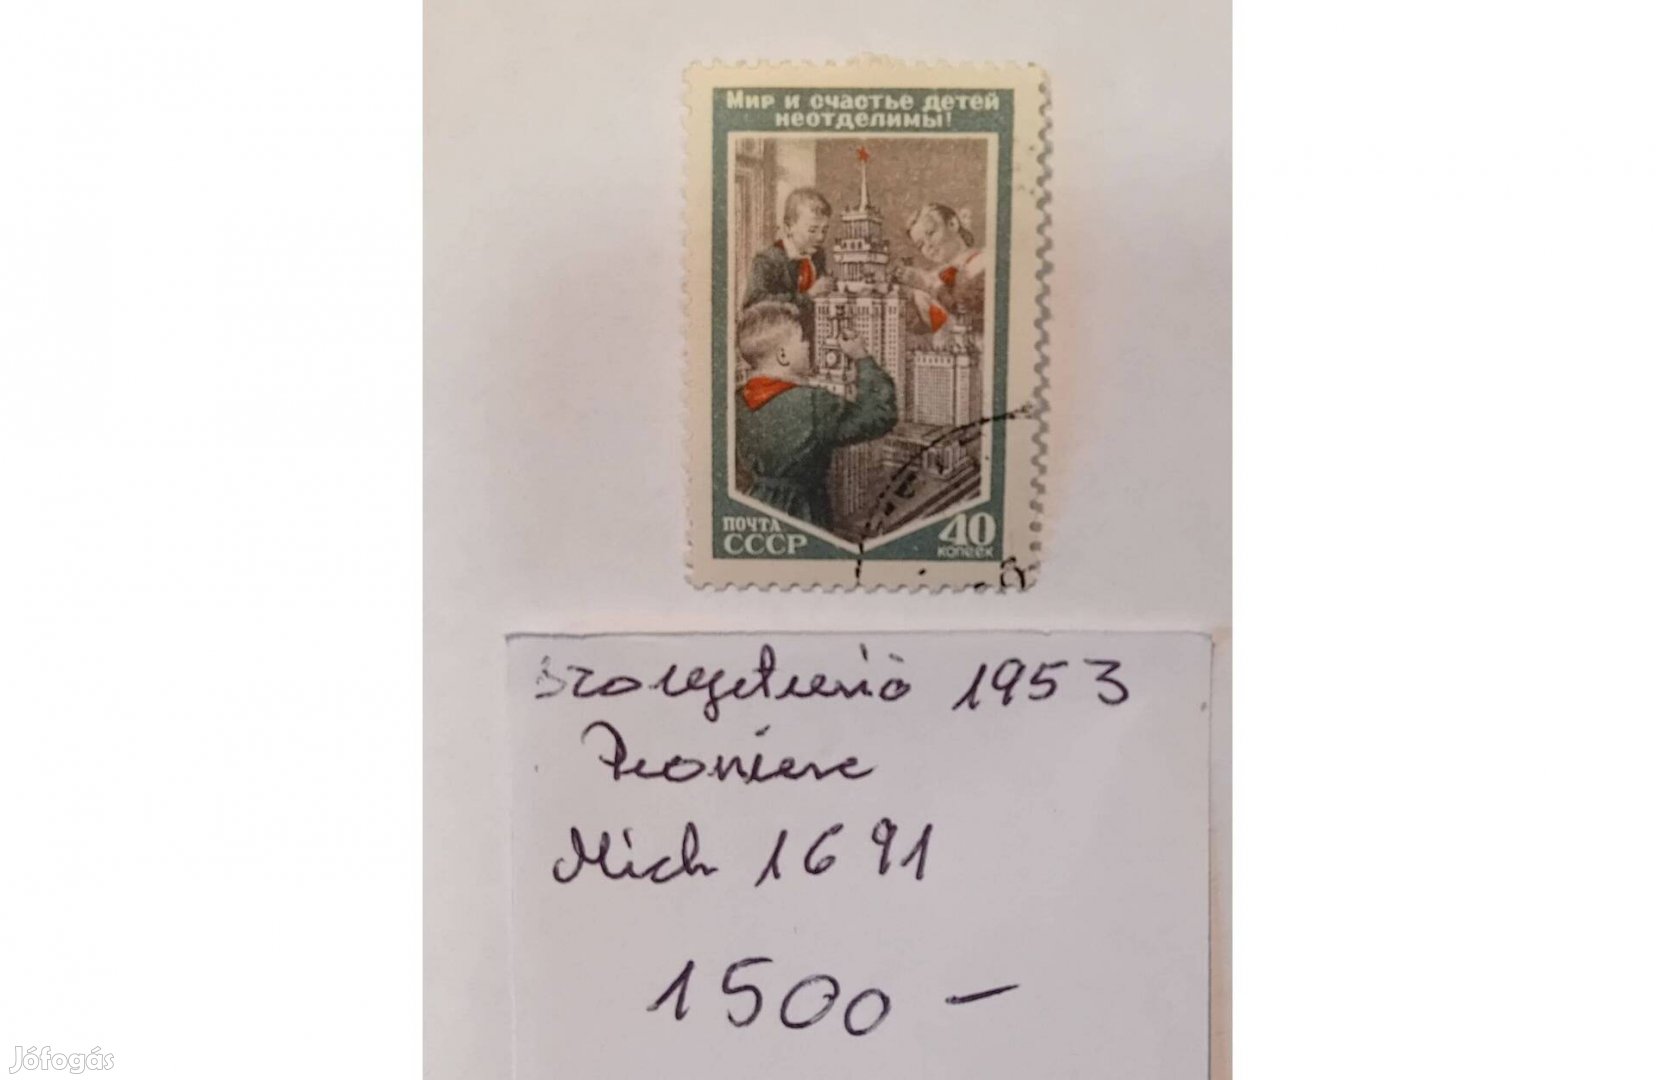 Szovjetunió orosz bélyeg 1953 úttörők pionear